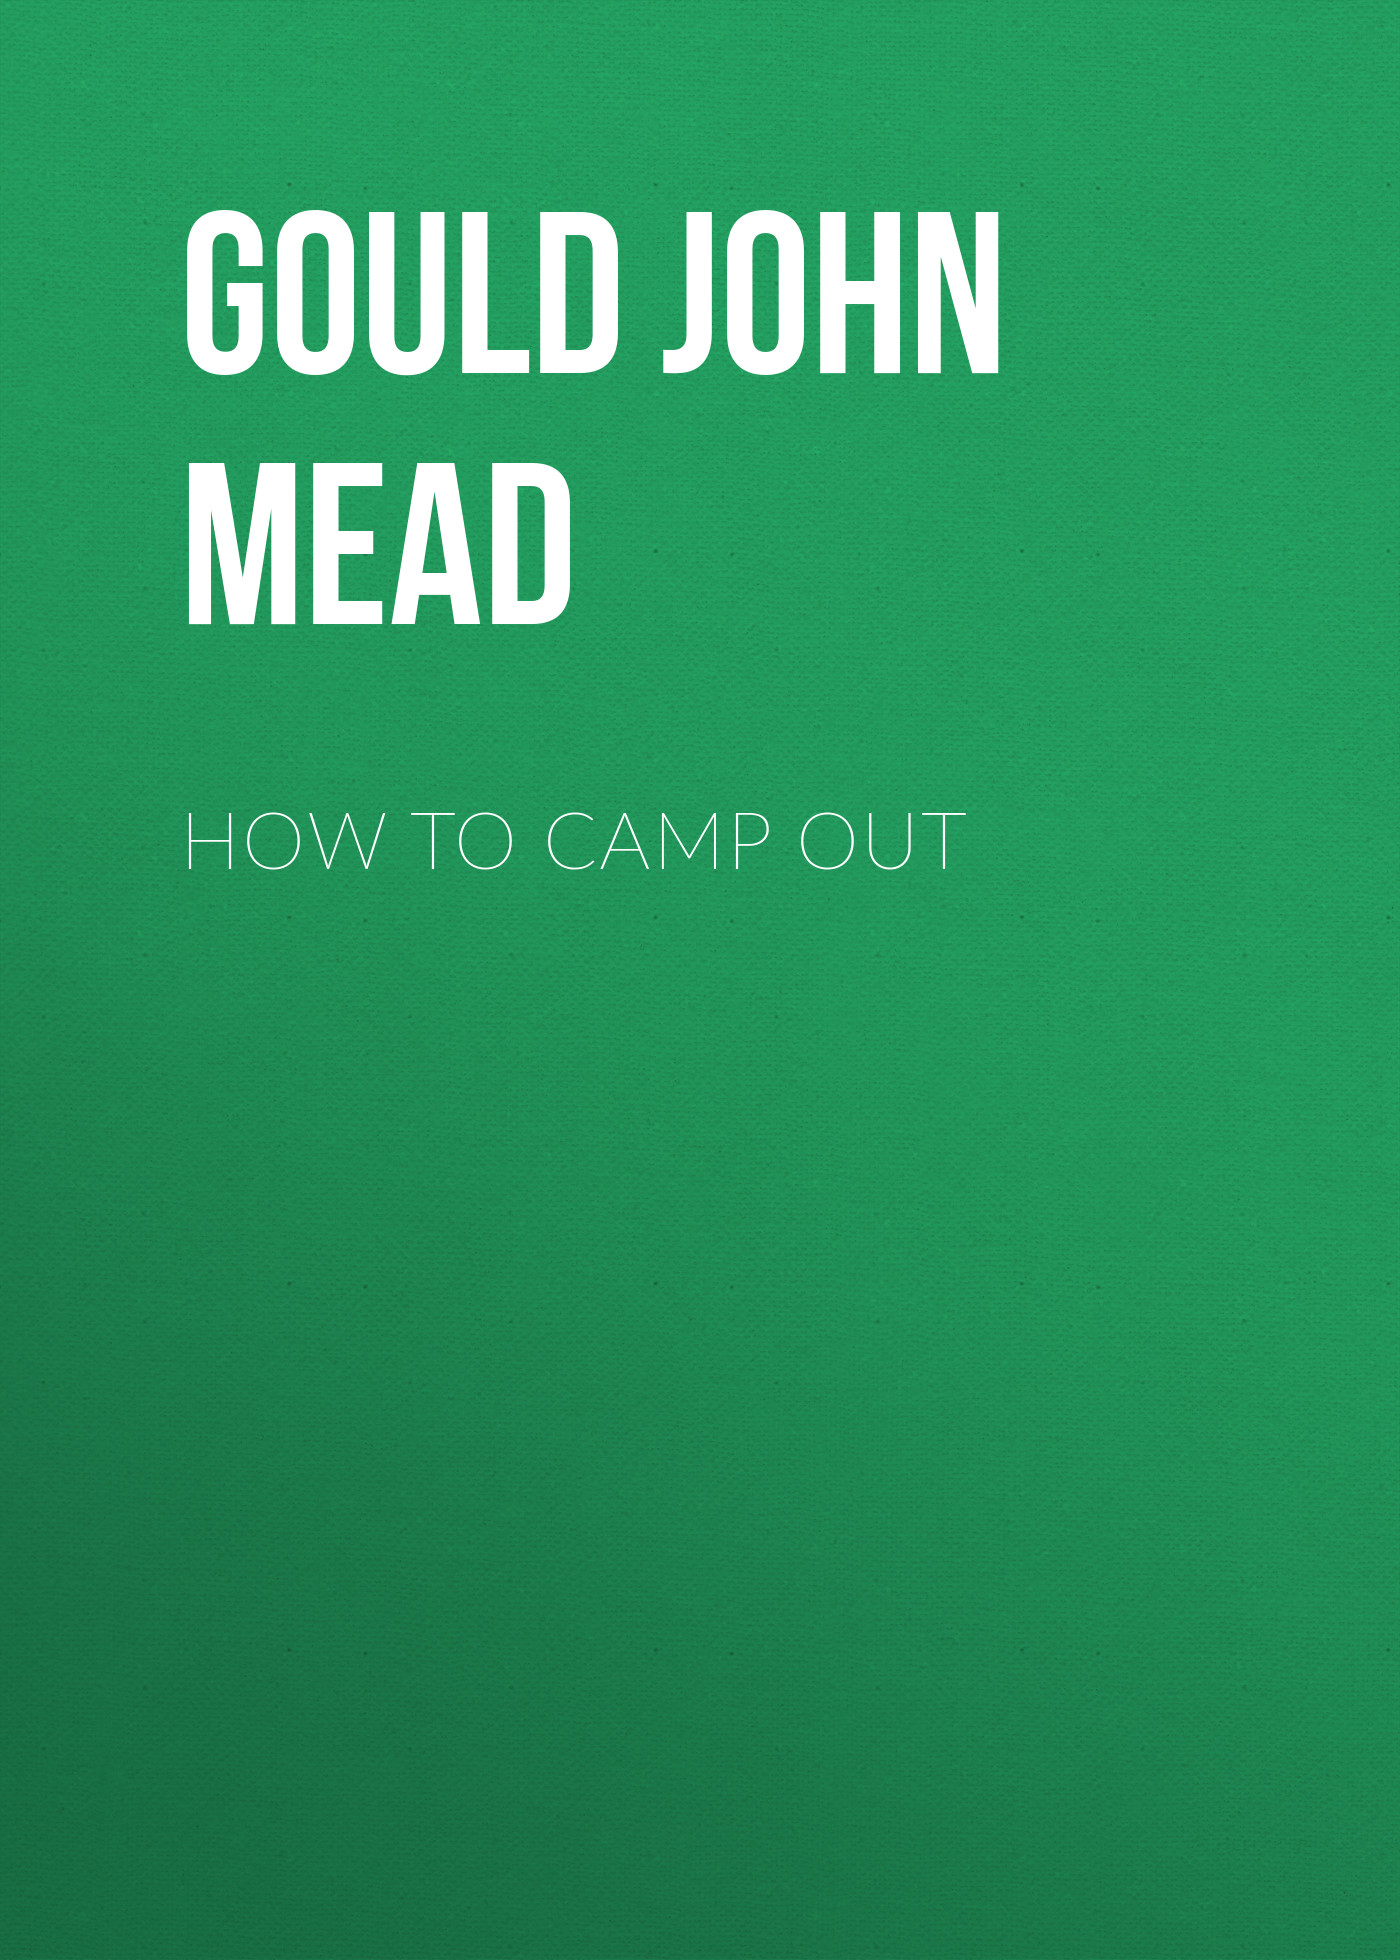 Книга How to Camp Out из серии , созданная John Gould, может относится к жанру Хобби, Ремесла, Зарубежная прикладная и научно-популярная литература, Биология. Стоимость электронной книги How to Camp Out с идентификатором 36322924 составляет 0 руб.